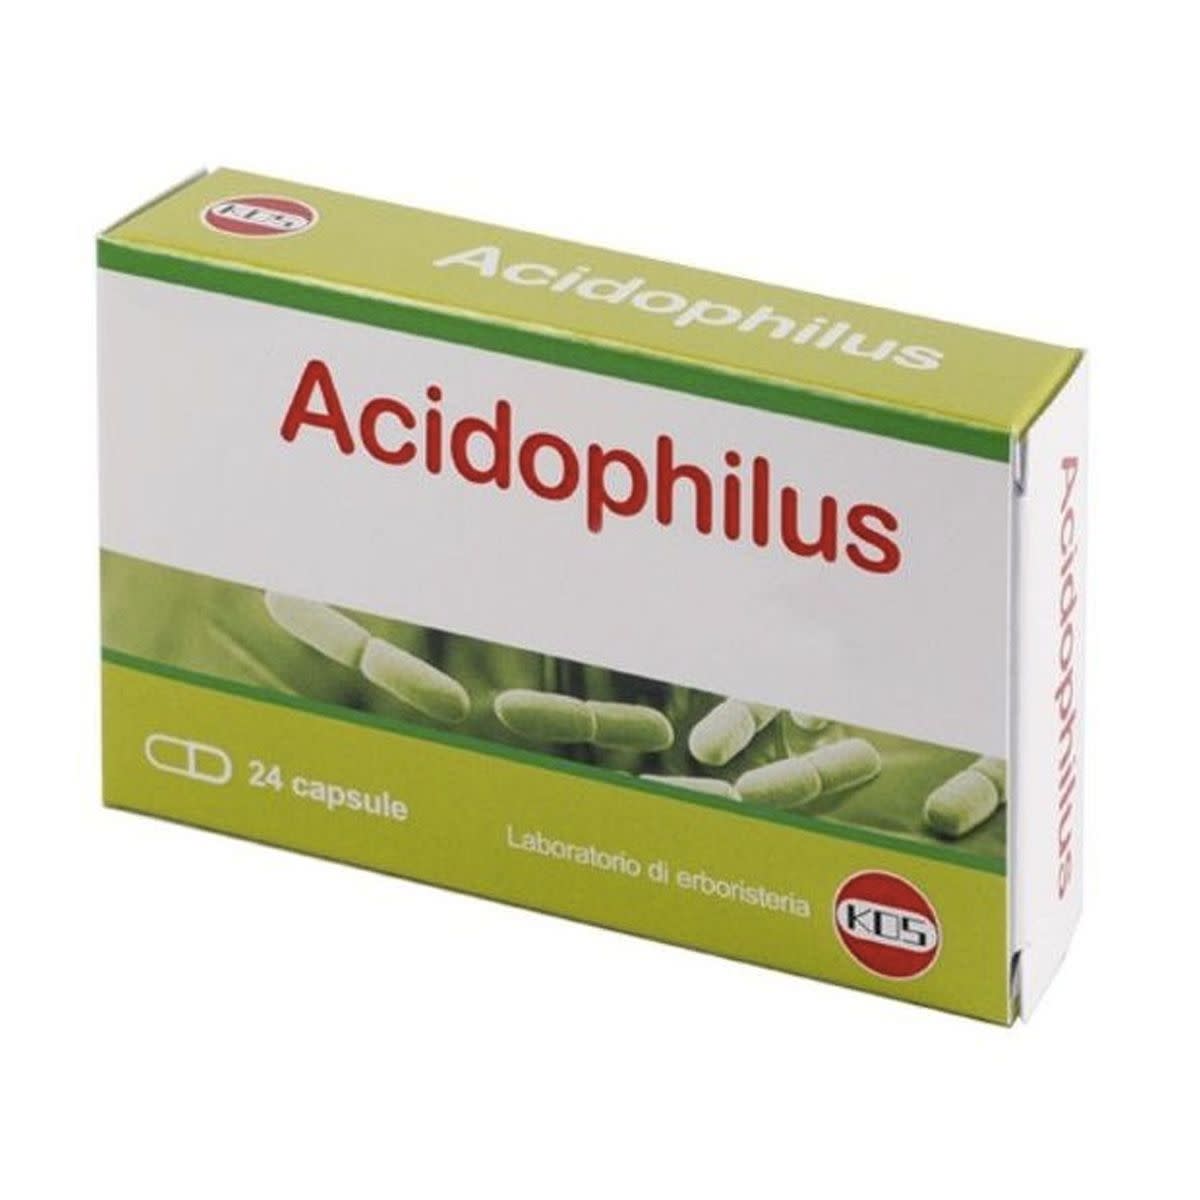 982544619 - Acidophilus 10 miliardi Integratore fermenti lattici 24 capsule - 4738692_2.jpg